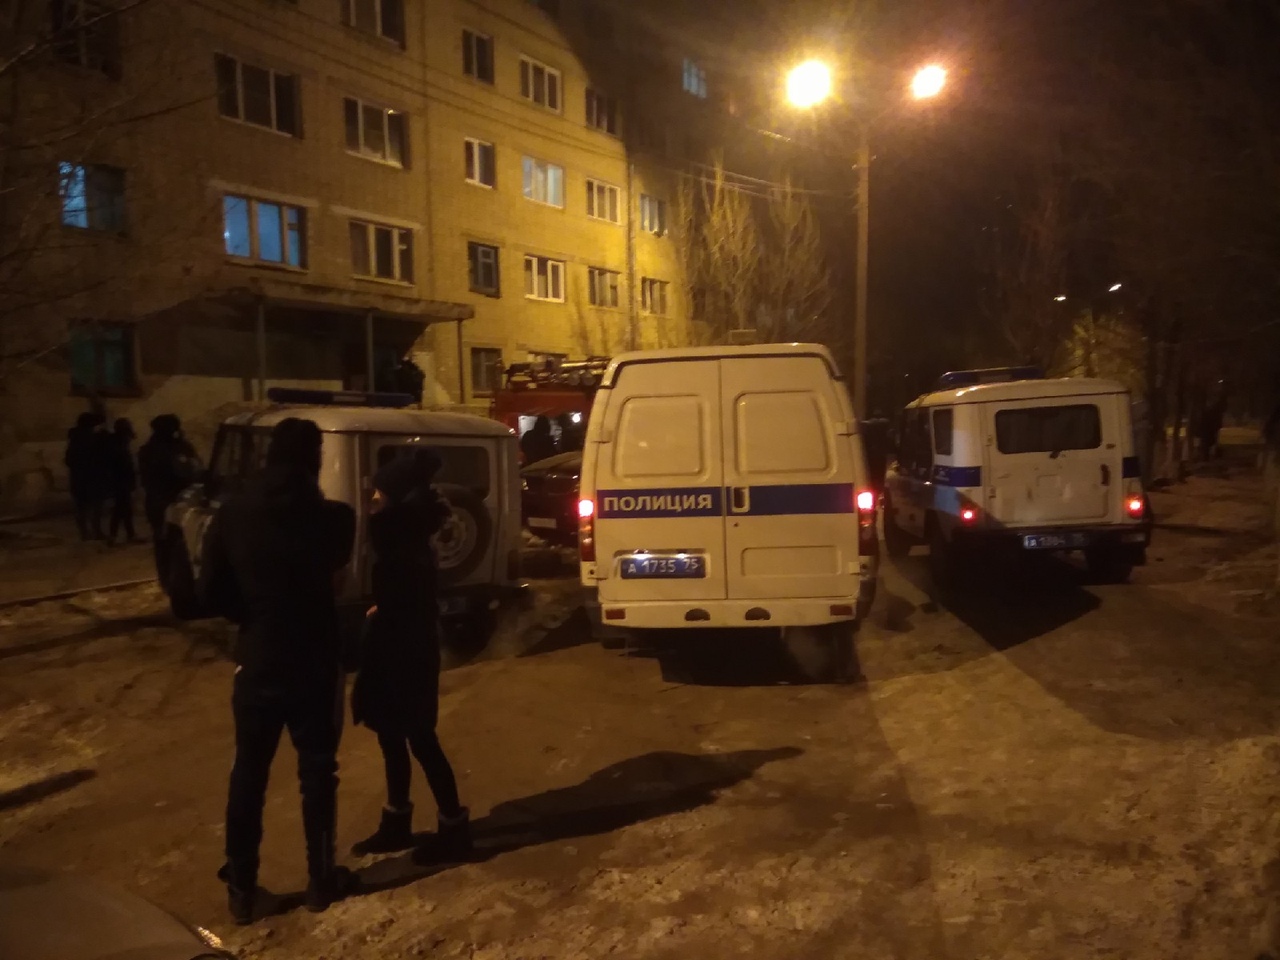 Мужчина пригрозил взорвать общежитие в Чите, жильцов эвакуировали